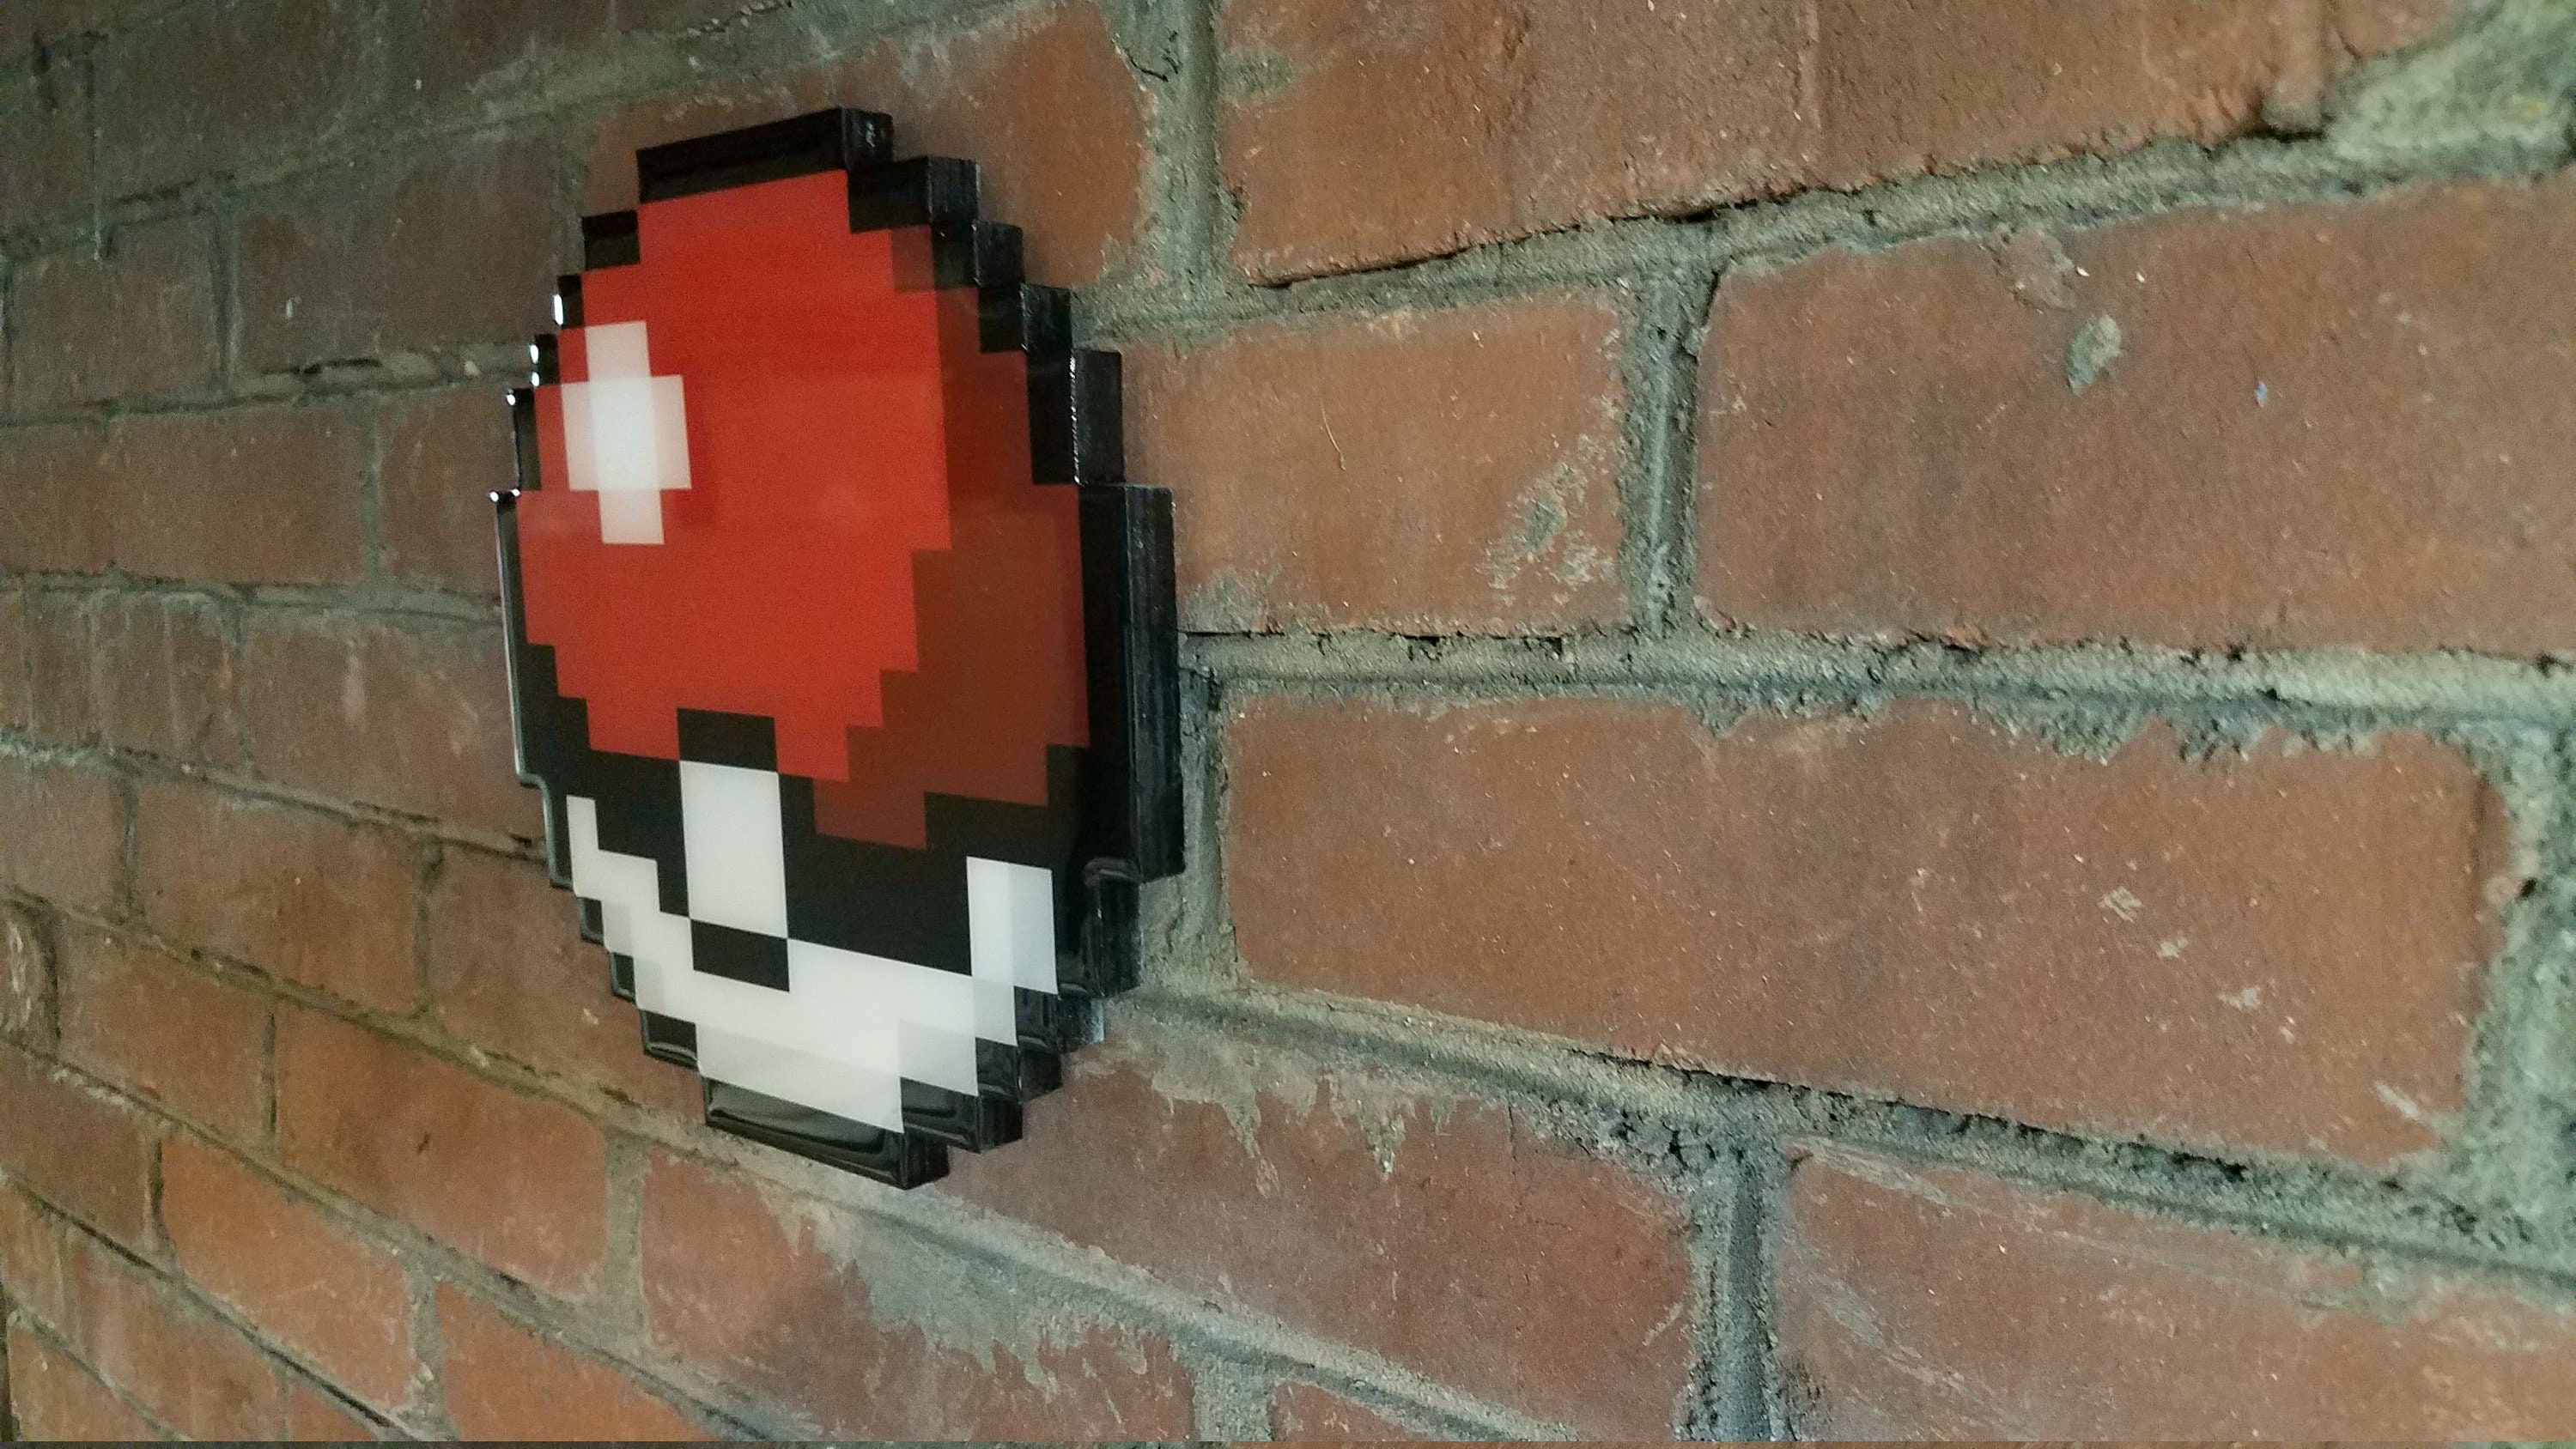 Poke Ball Pixel Art – BRIK